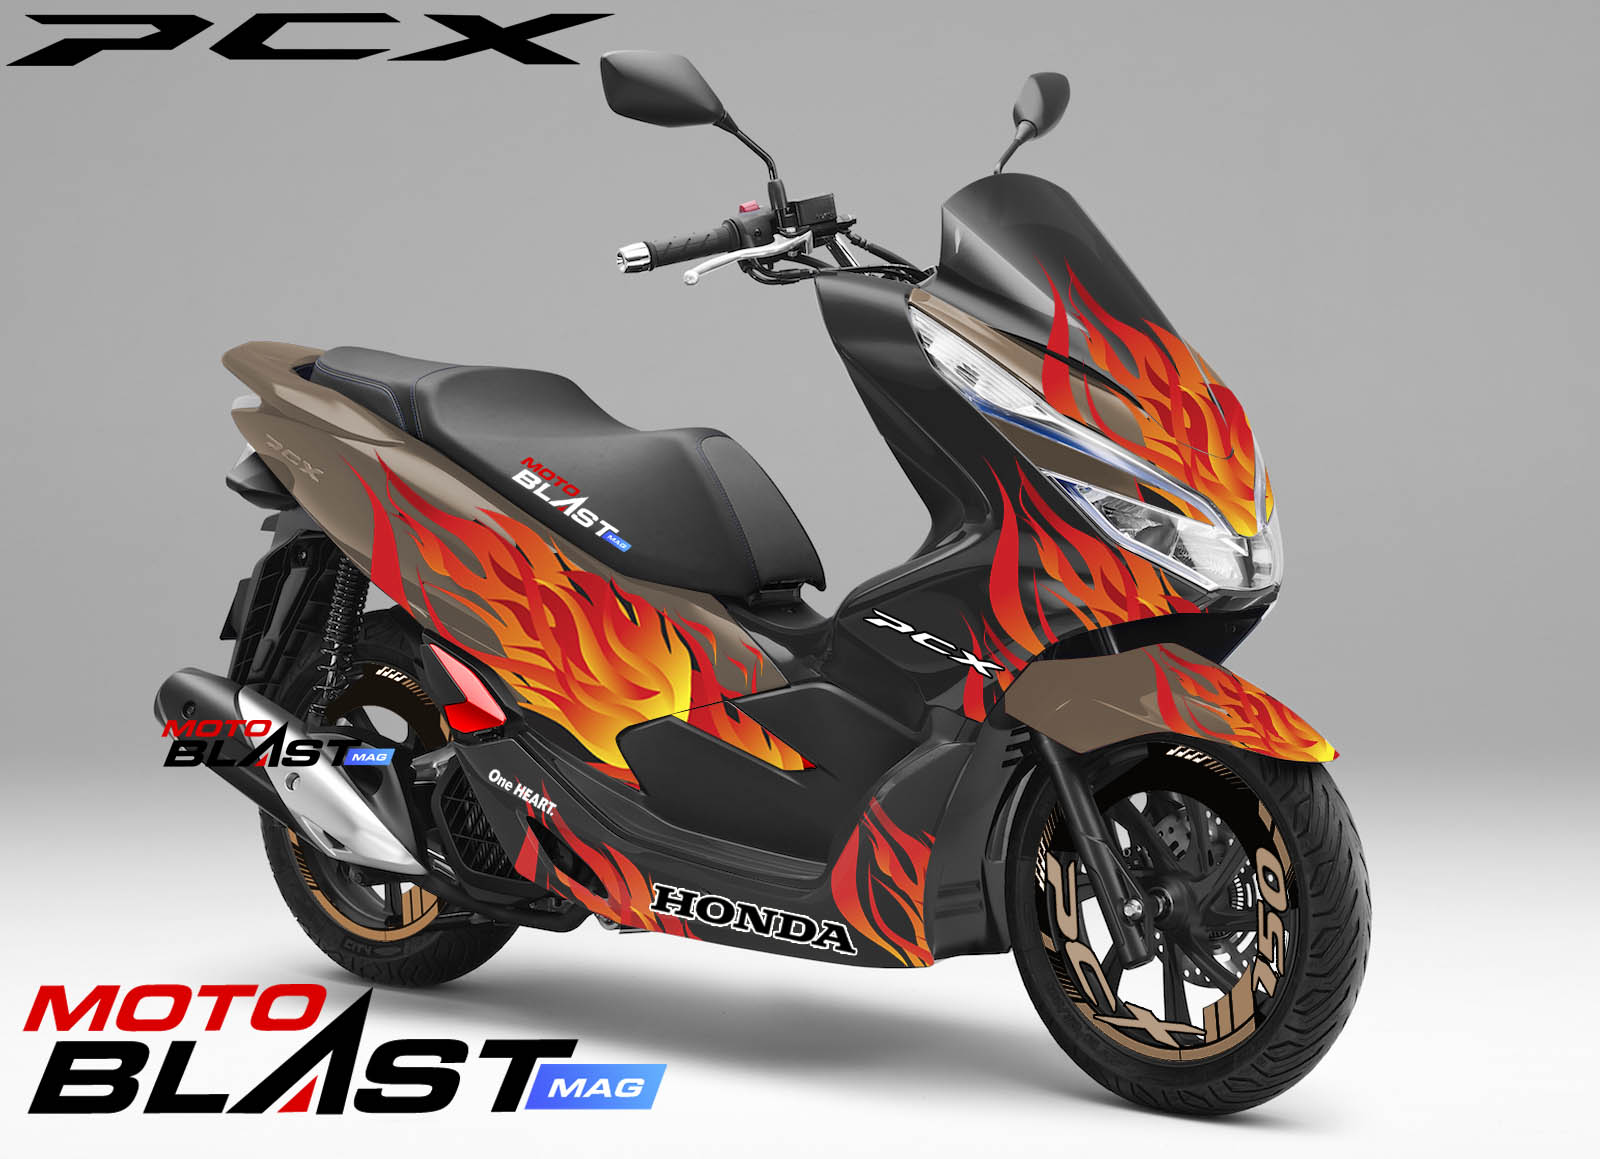 Modifikasi Striping Honda PCX 150 Flameblast MOTOBLAST